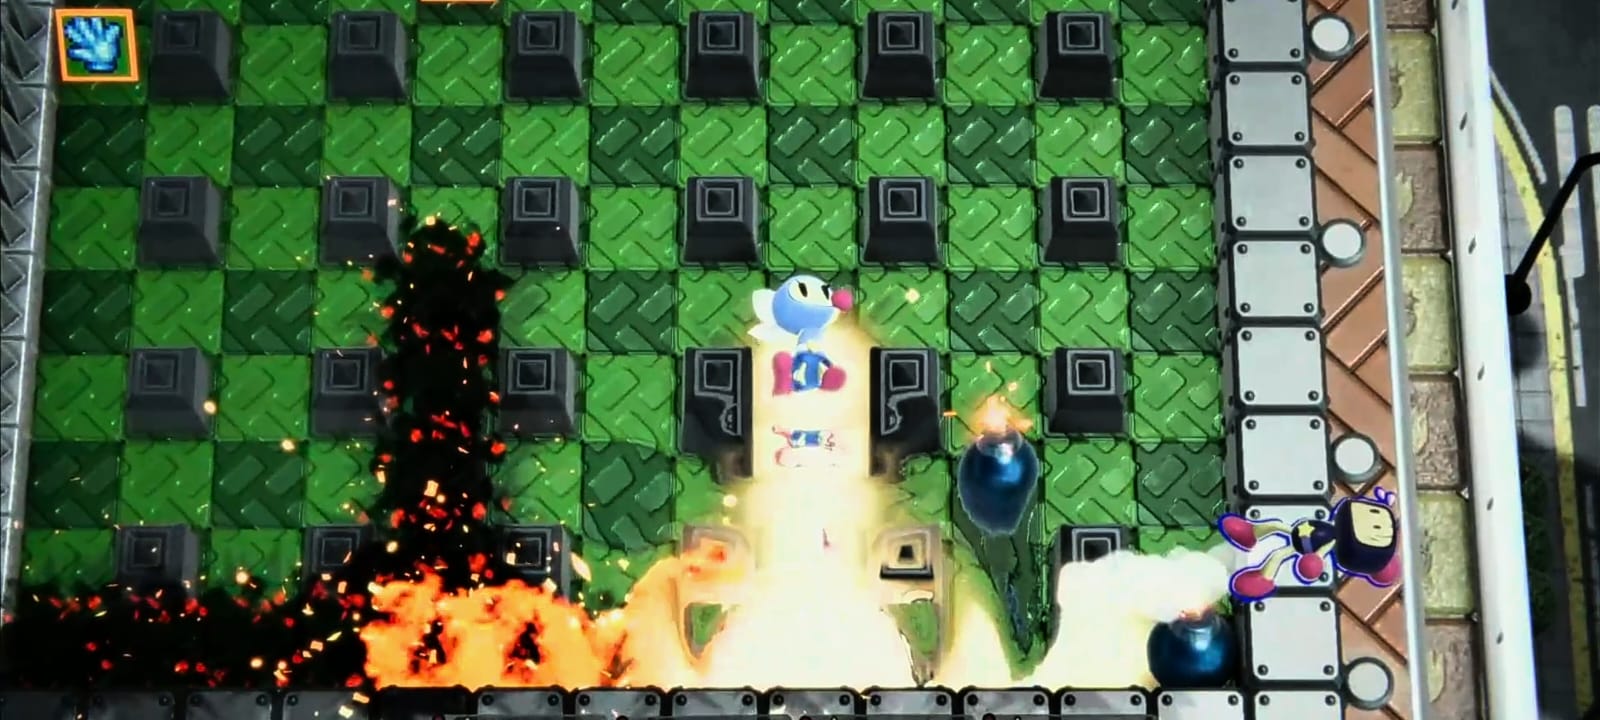 Reseña: Super Bomberman R2, un regreso explosivo de la franquicia 8